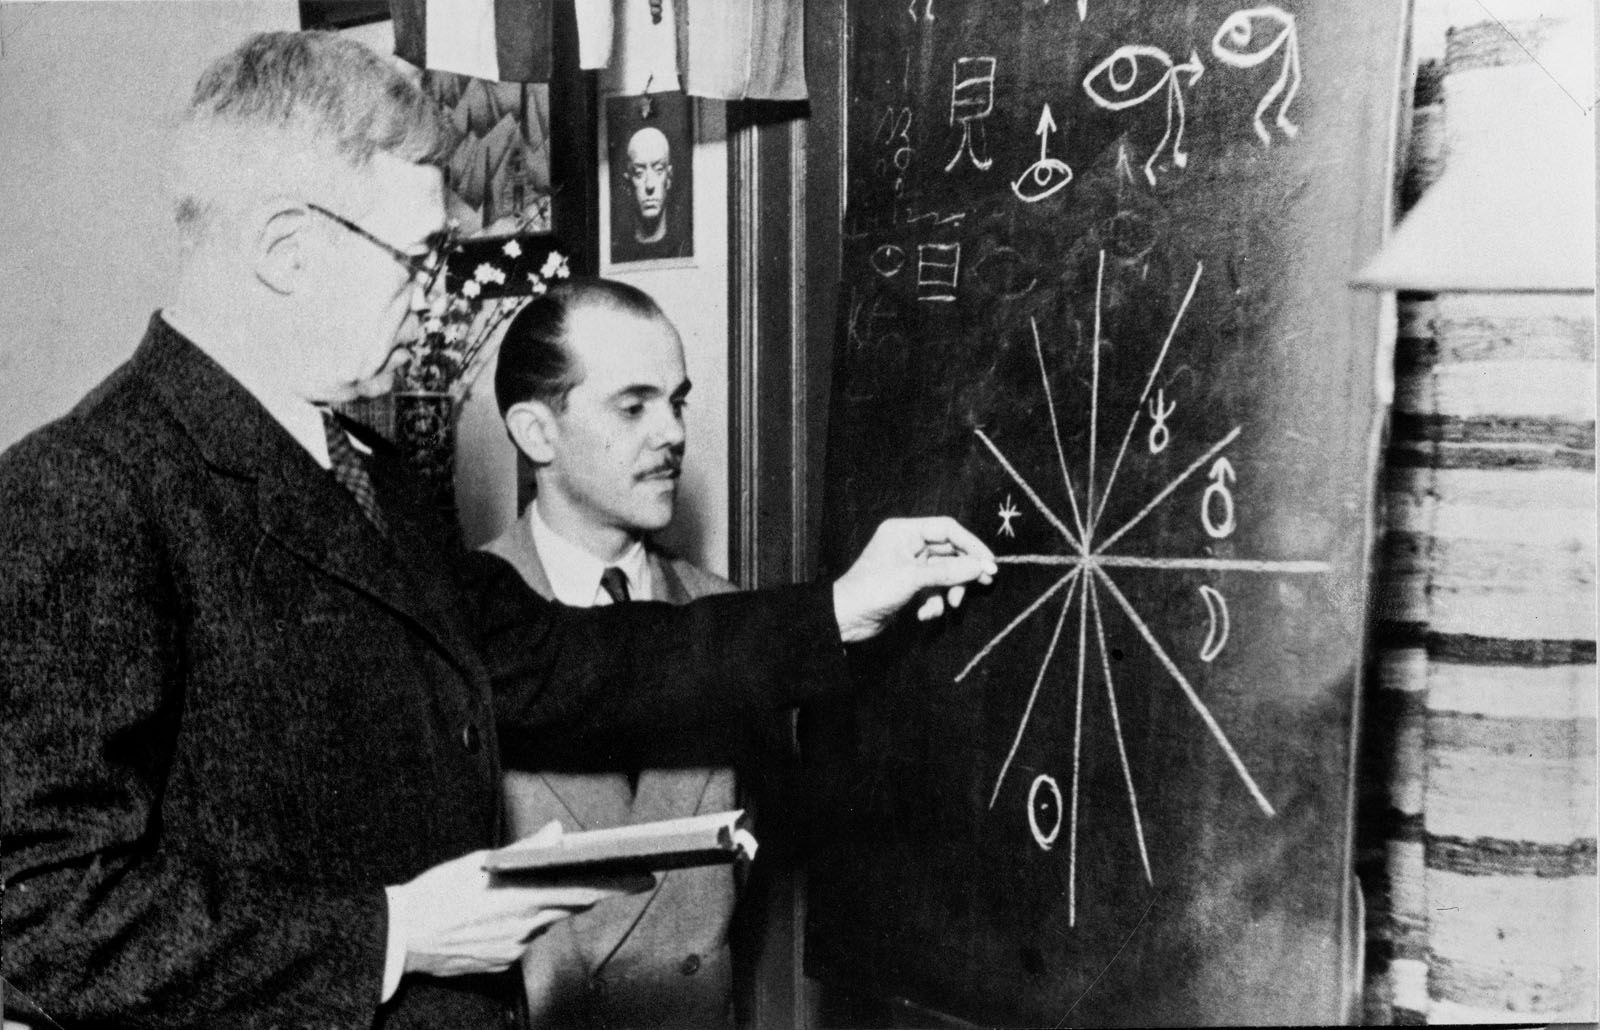 Xul Solar preparando una carta astrológica con el periodista Carlos Marín, 1950, fotografía. Coección Museo Xul Solar